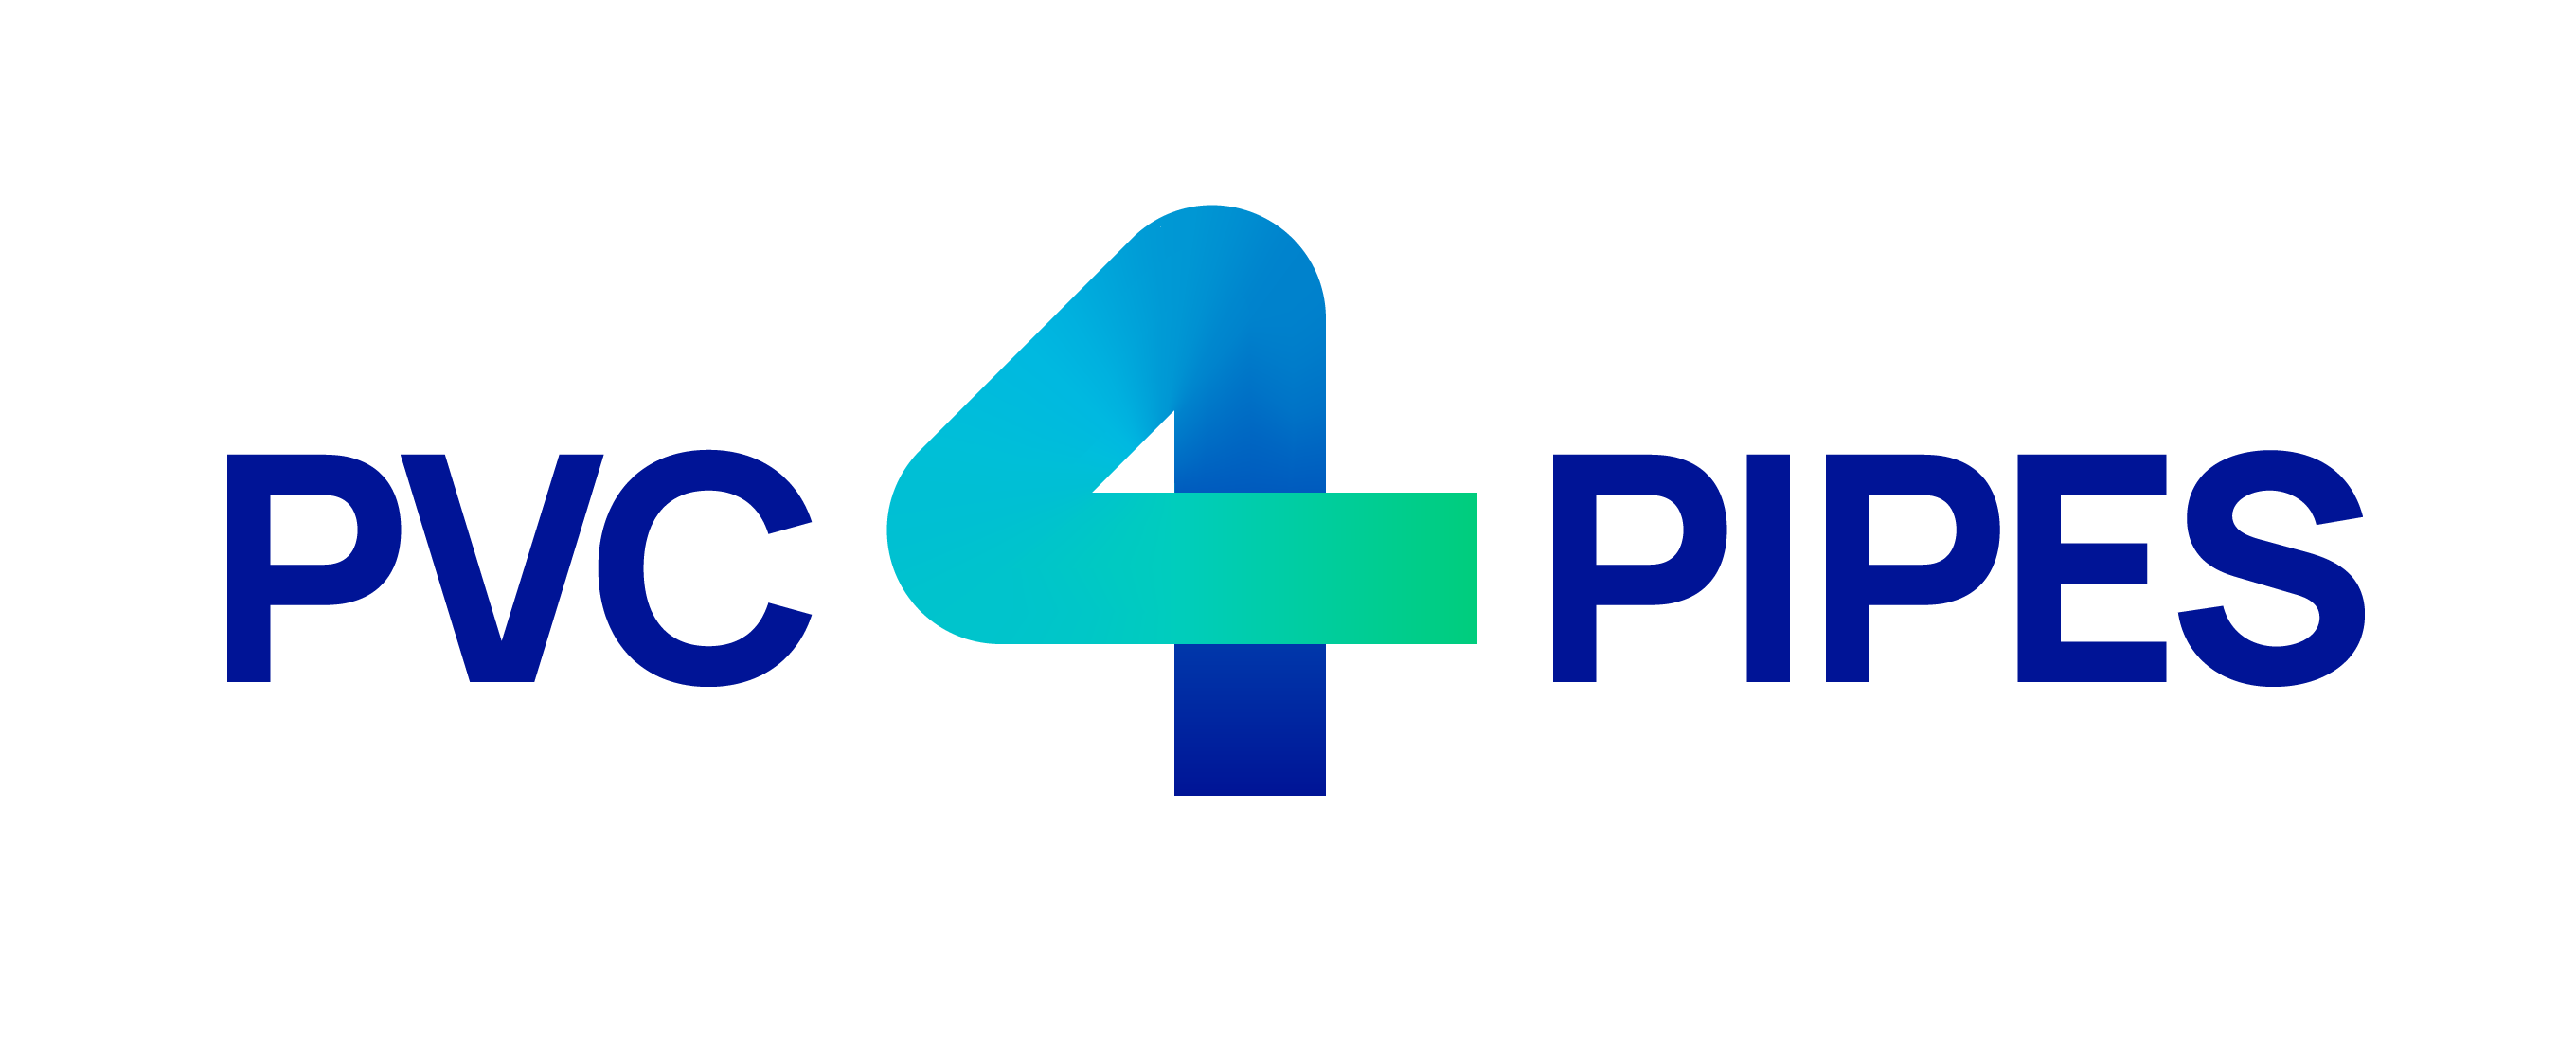 PVC4Pipes: connettere sostenibilità e innovazione nel settore europeo dei tubi in PVC